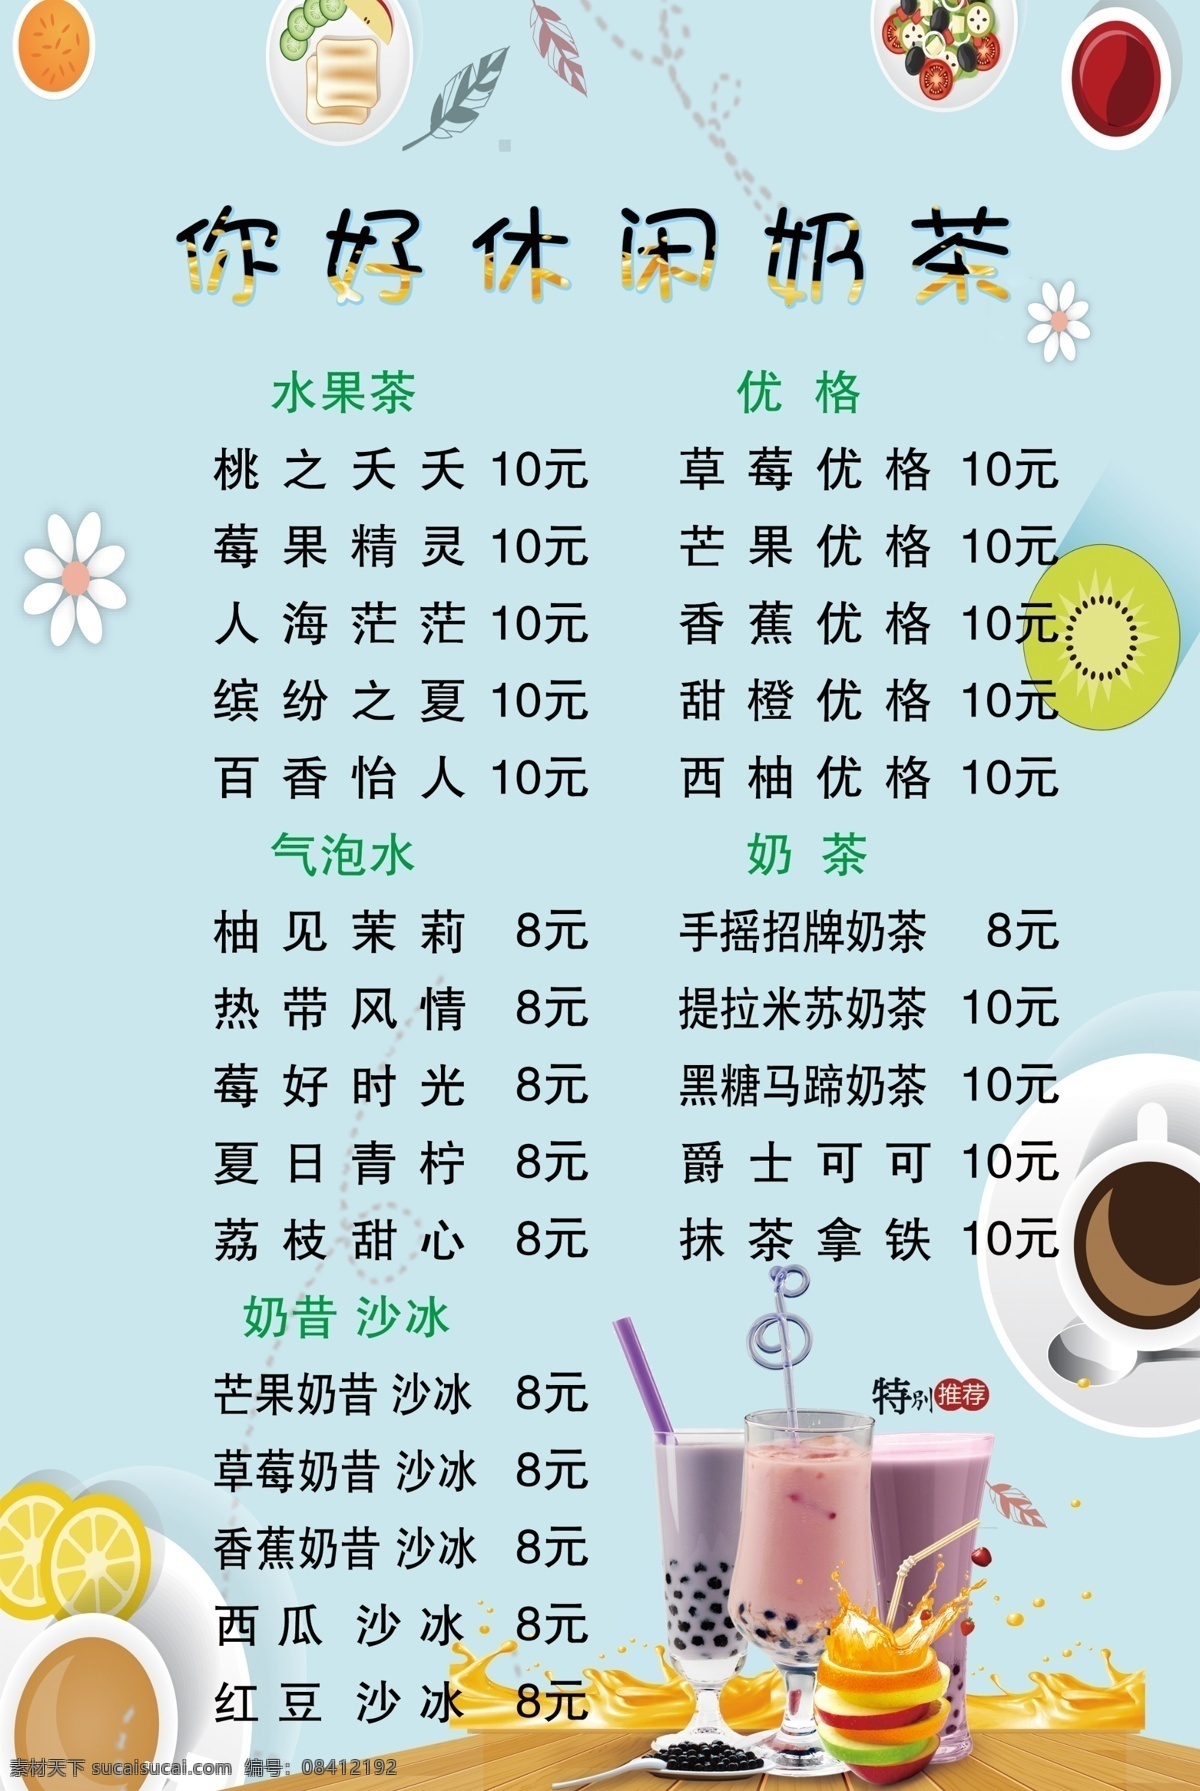 奶茶价目表 休闲奶茶 价格表 特别推荐 海报 饮品